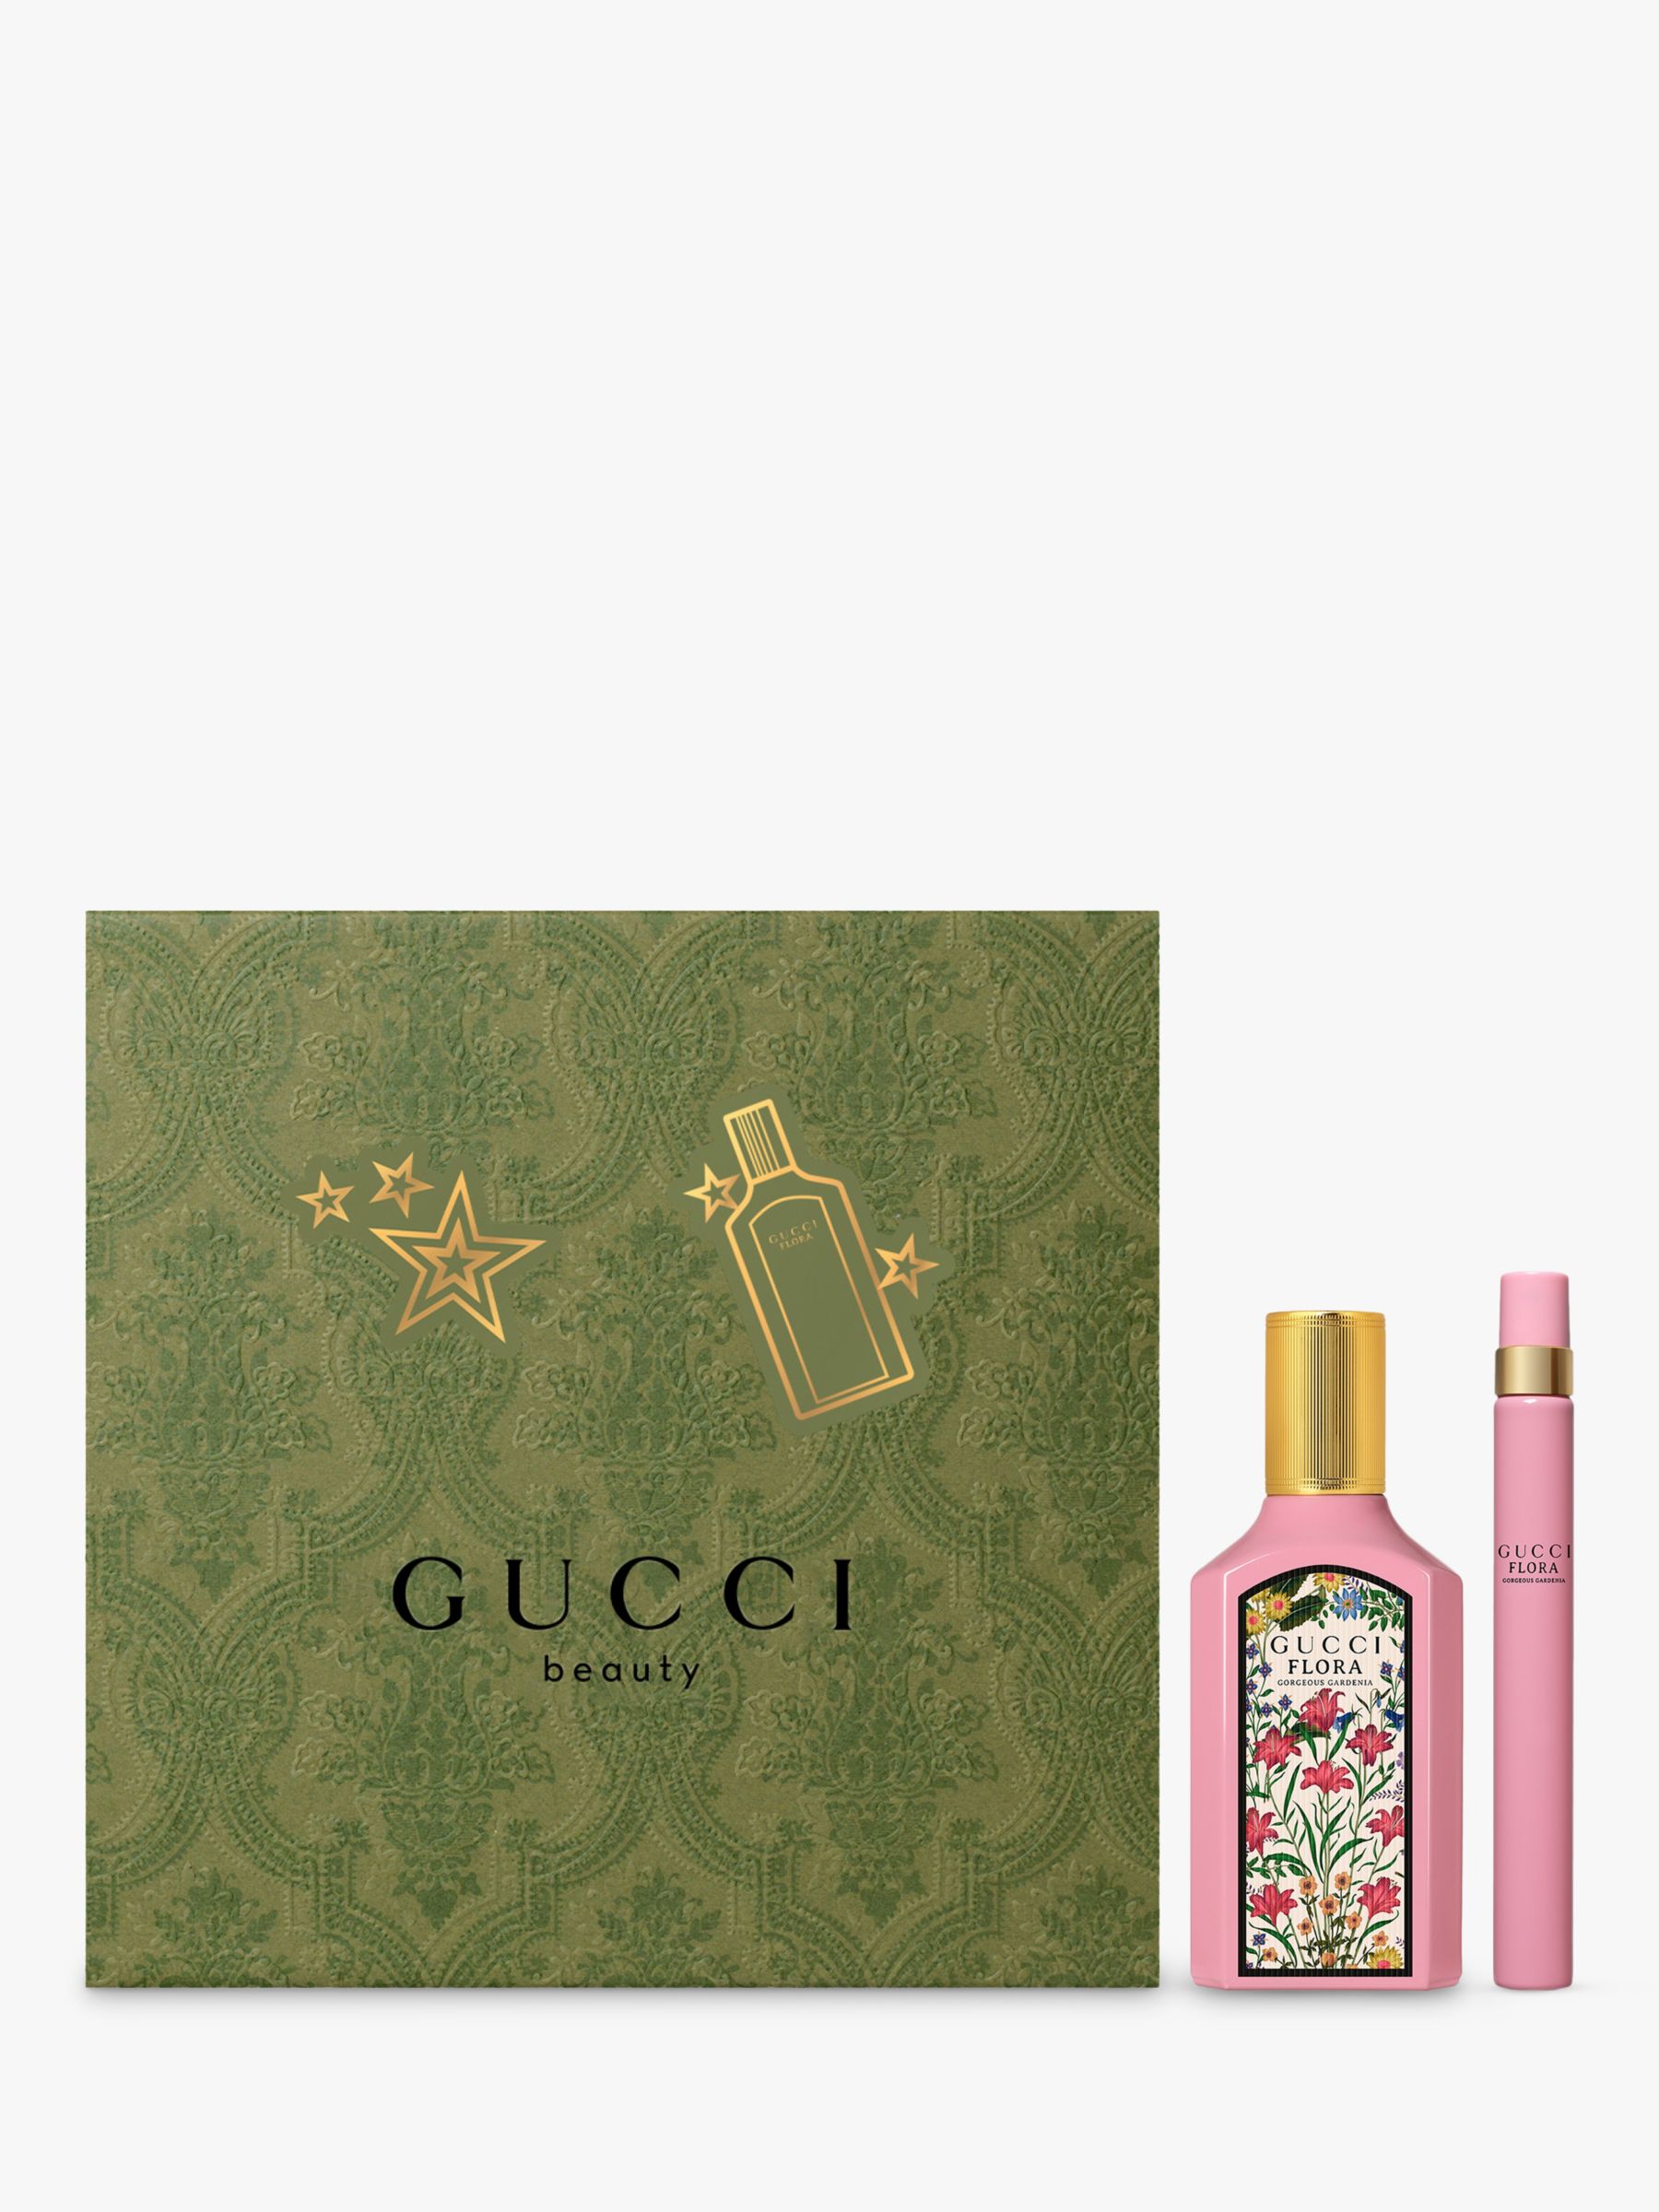 Shop Gucci Gucci Flora Gorgeous Gardenia Eau De Parfum